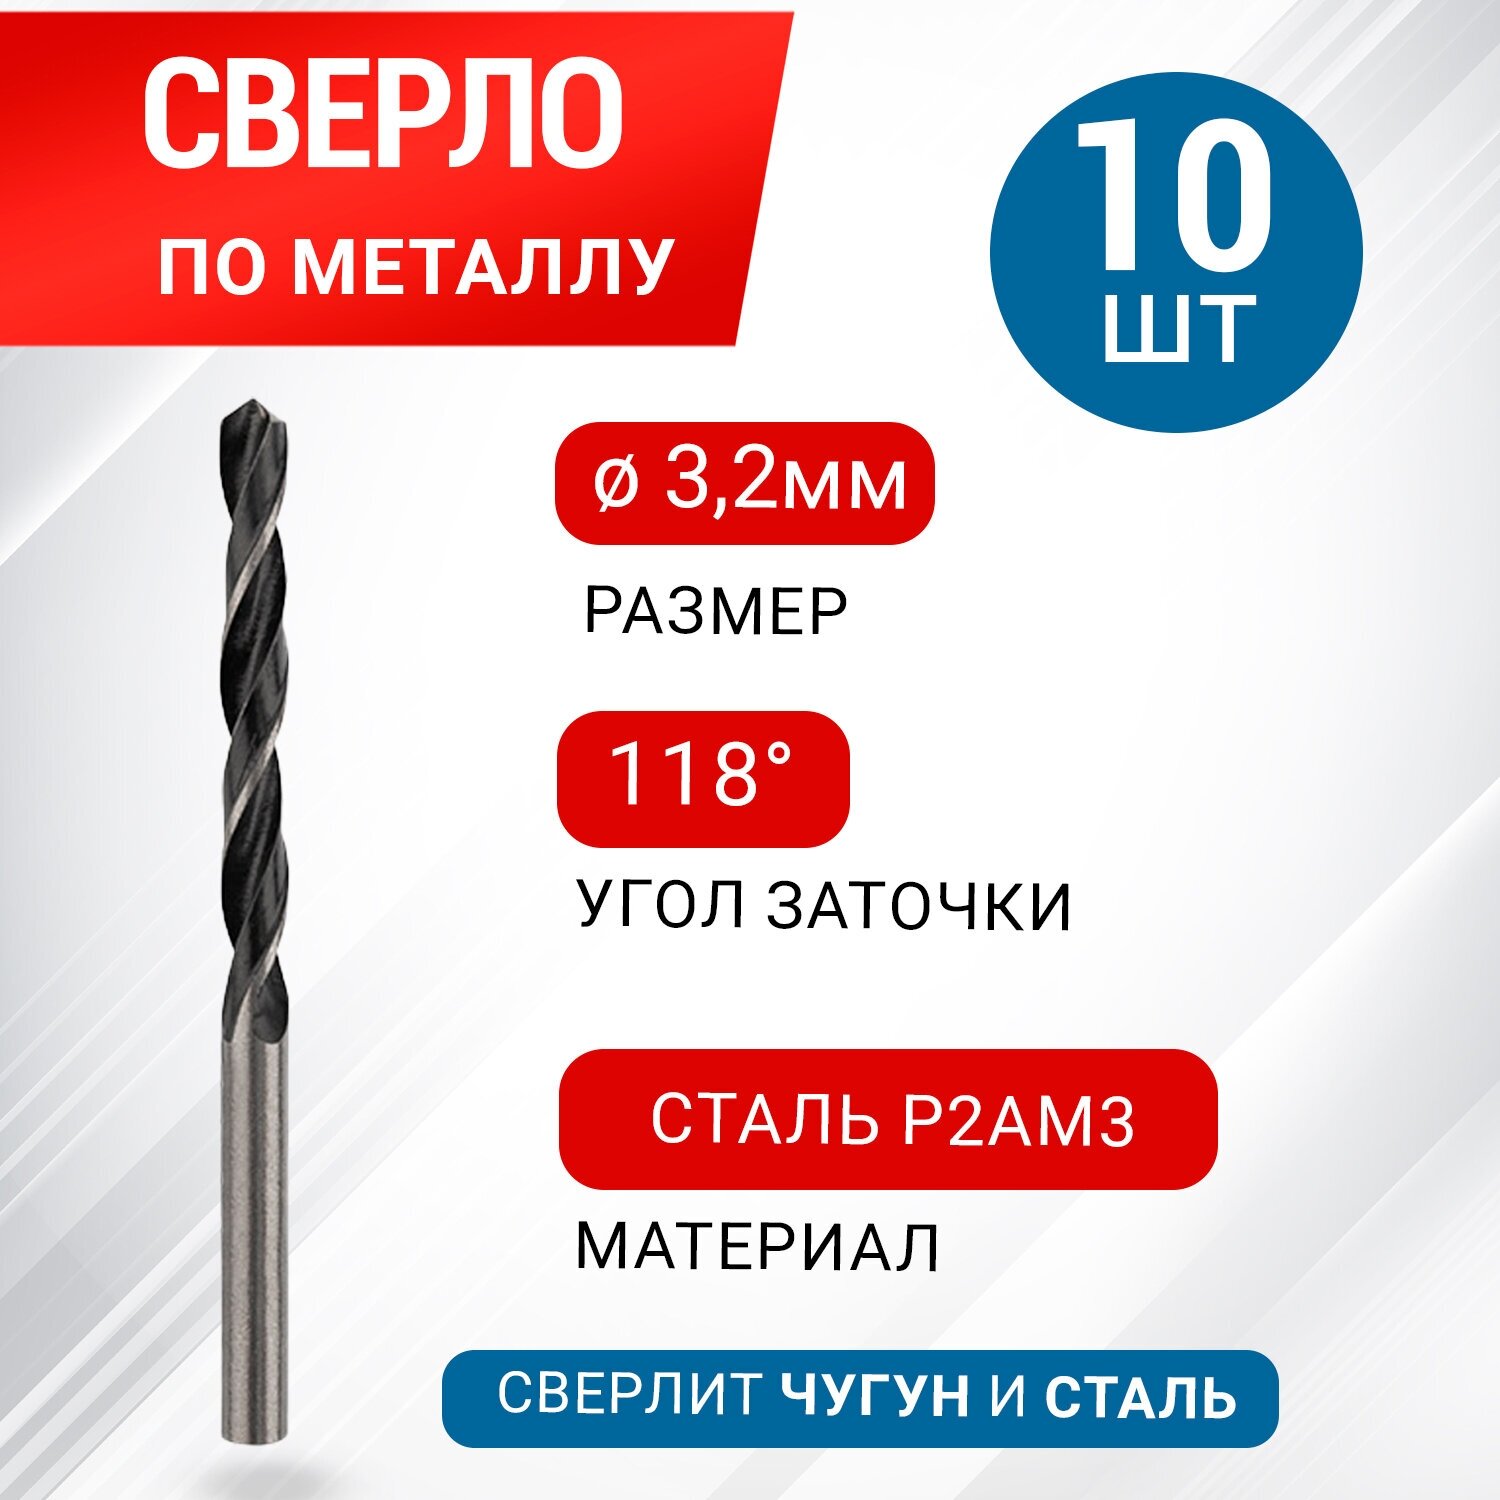 Сверло по металлу 3,2 мм "Стандарт": сталь Р2АМ3, 10 шт в упаковке